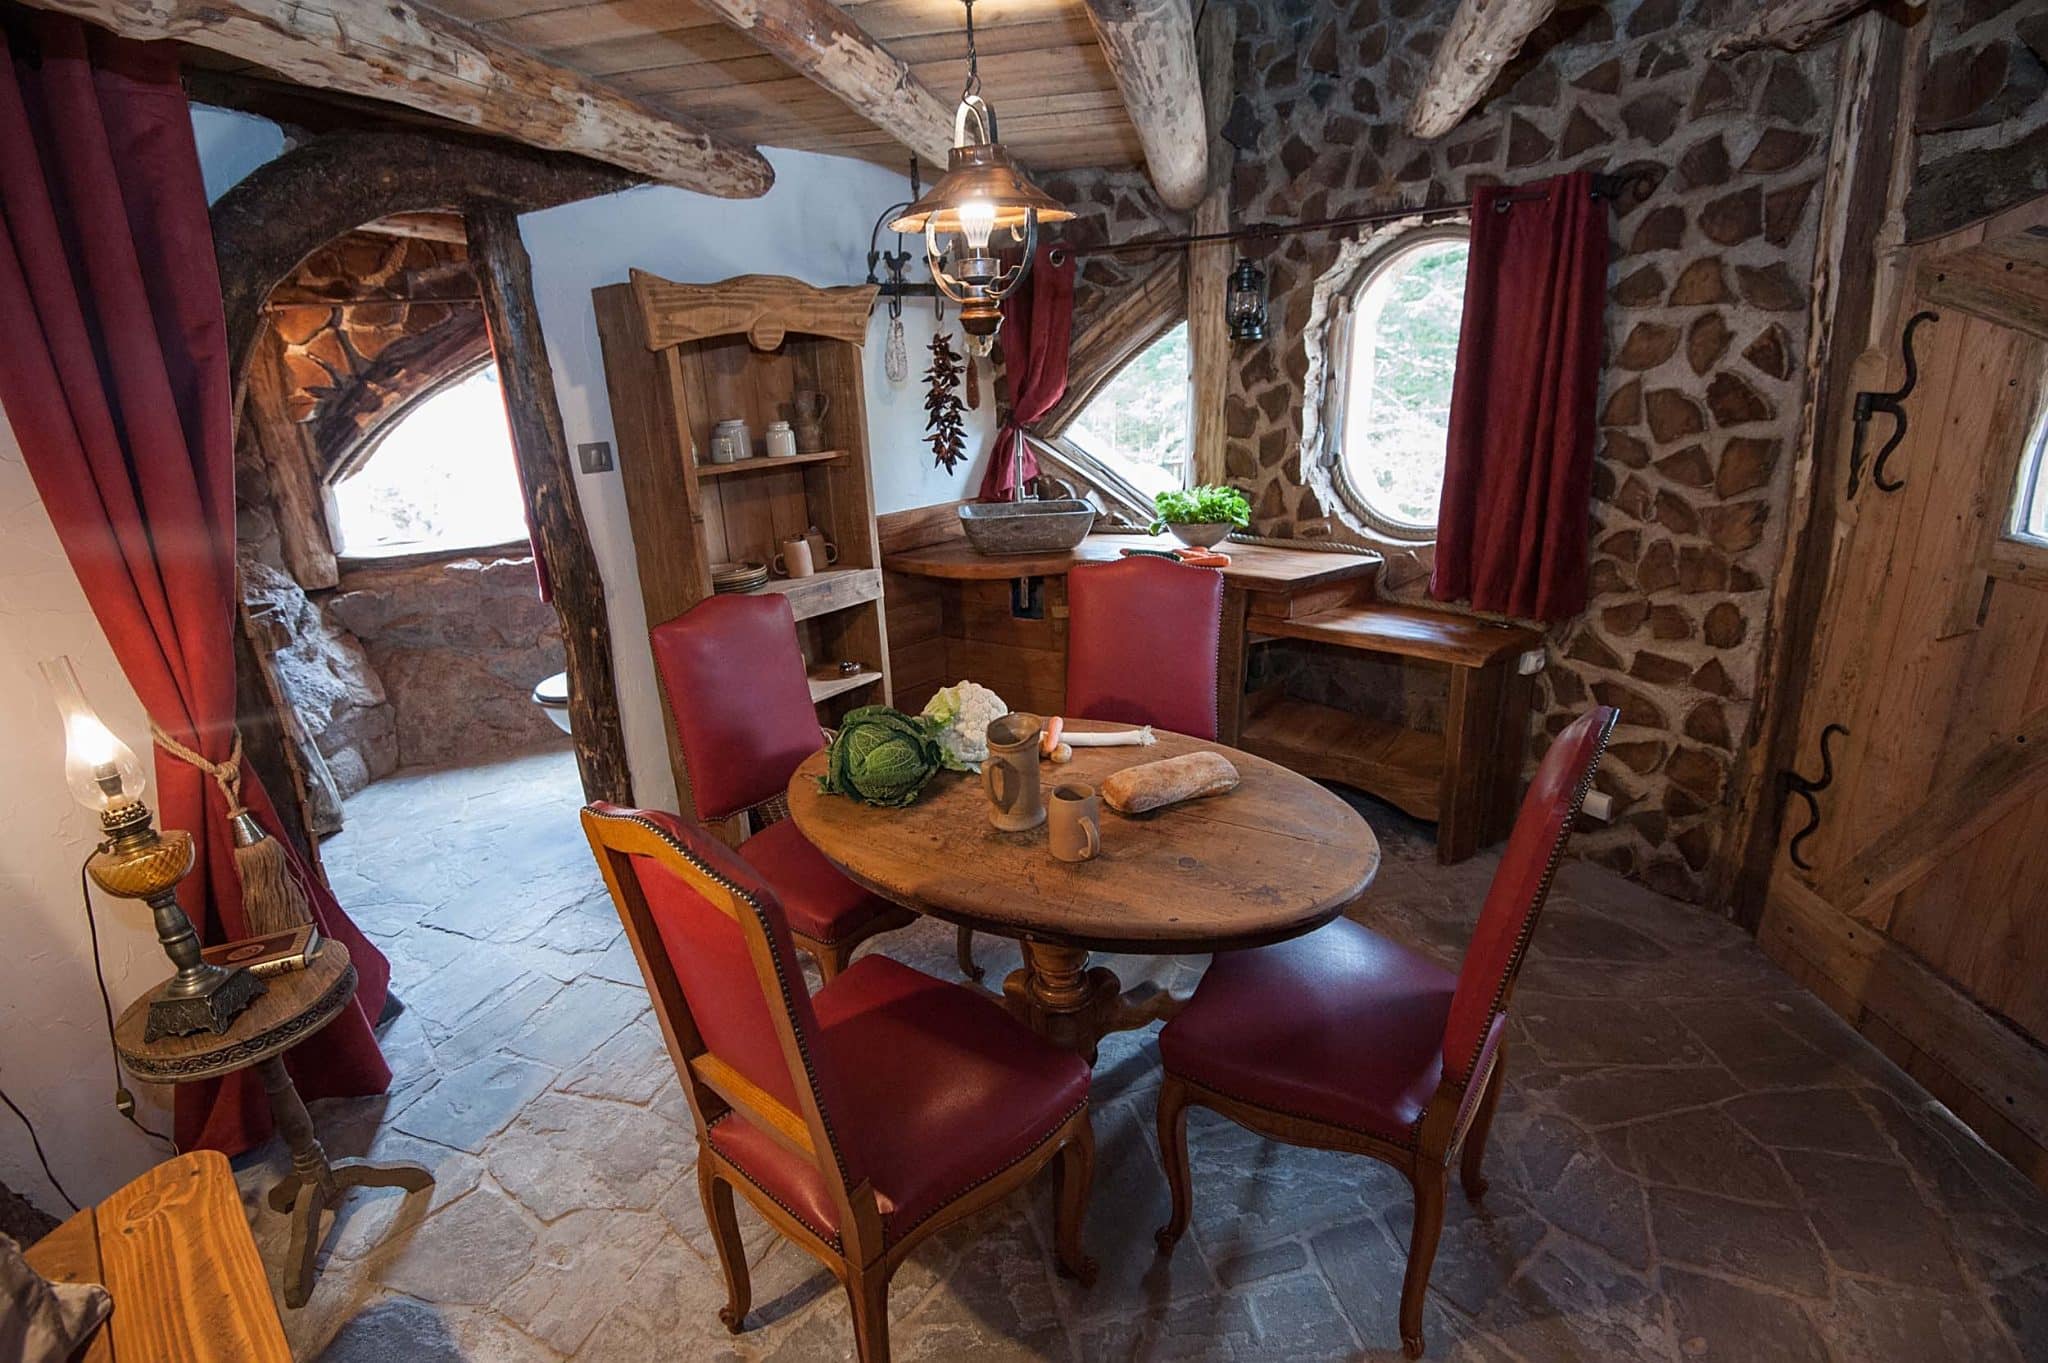 intérieur de la maison du hobbit dans le coin repas avec une table ronde et 4 chaises. de la nourriture est sur la table